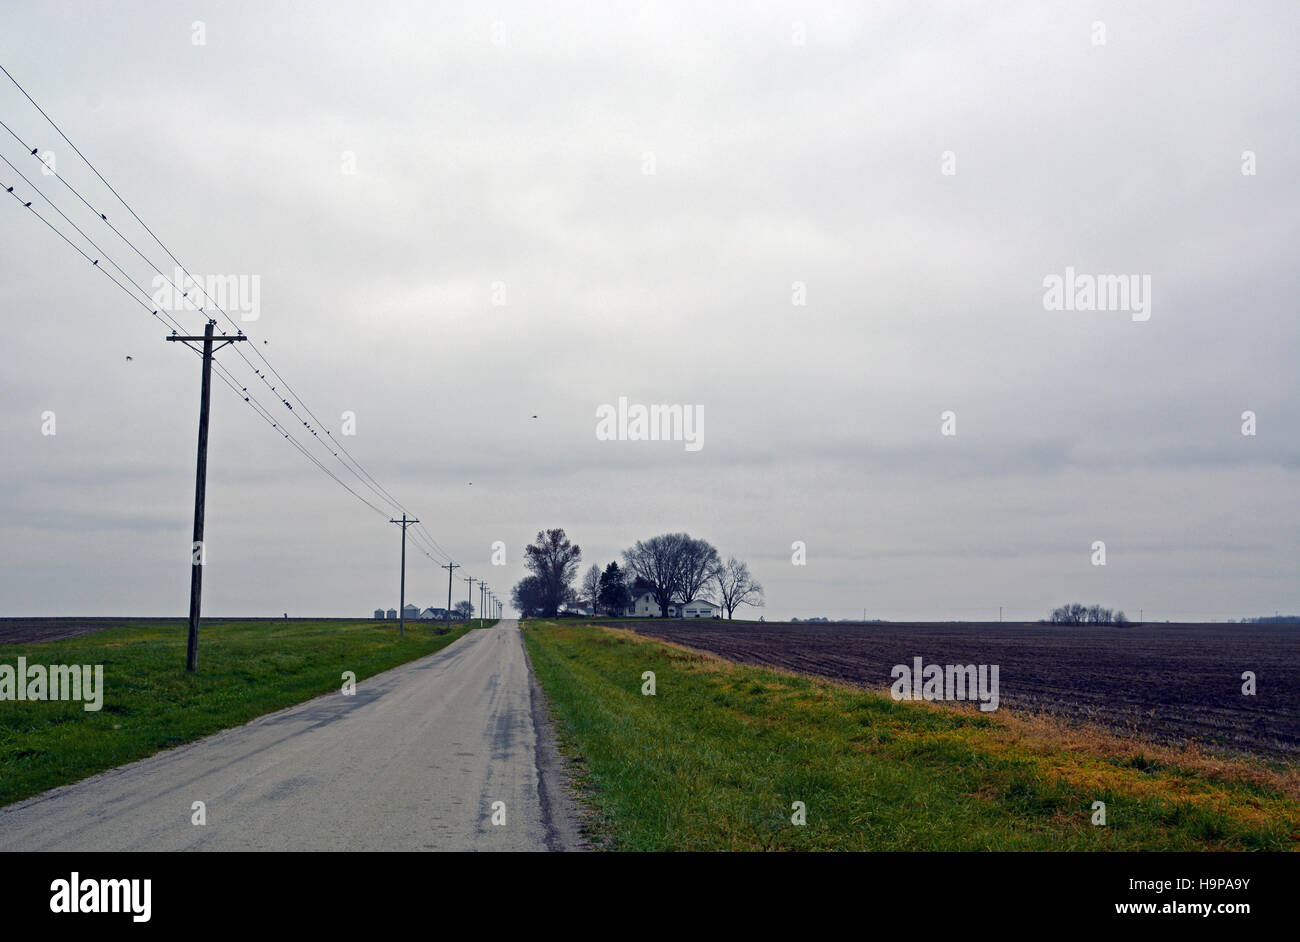 Téléphone et poteaux d'électricité s'étendent au loin dans la distance sous un ciel de novembre gris et froid dans le Midwest des États-Unis. Banque D'Images